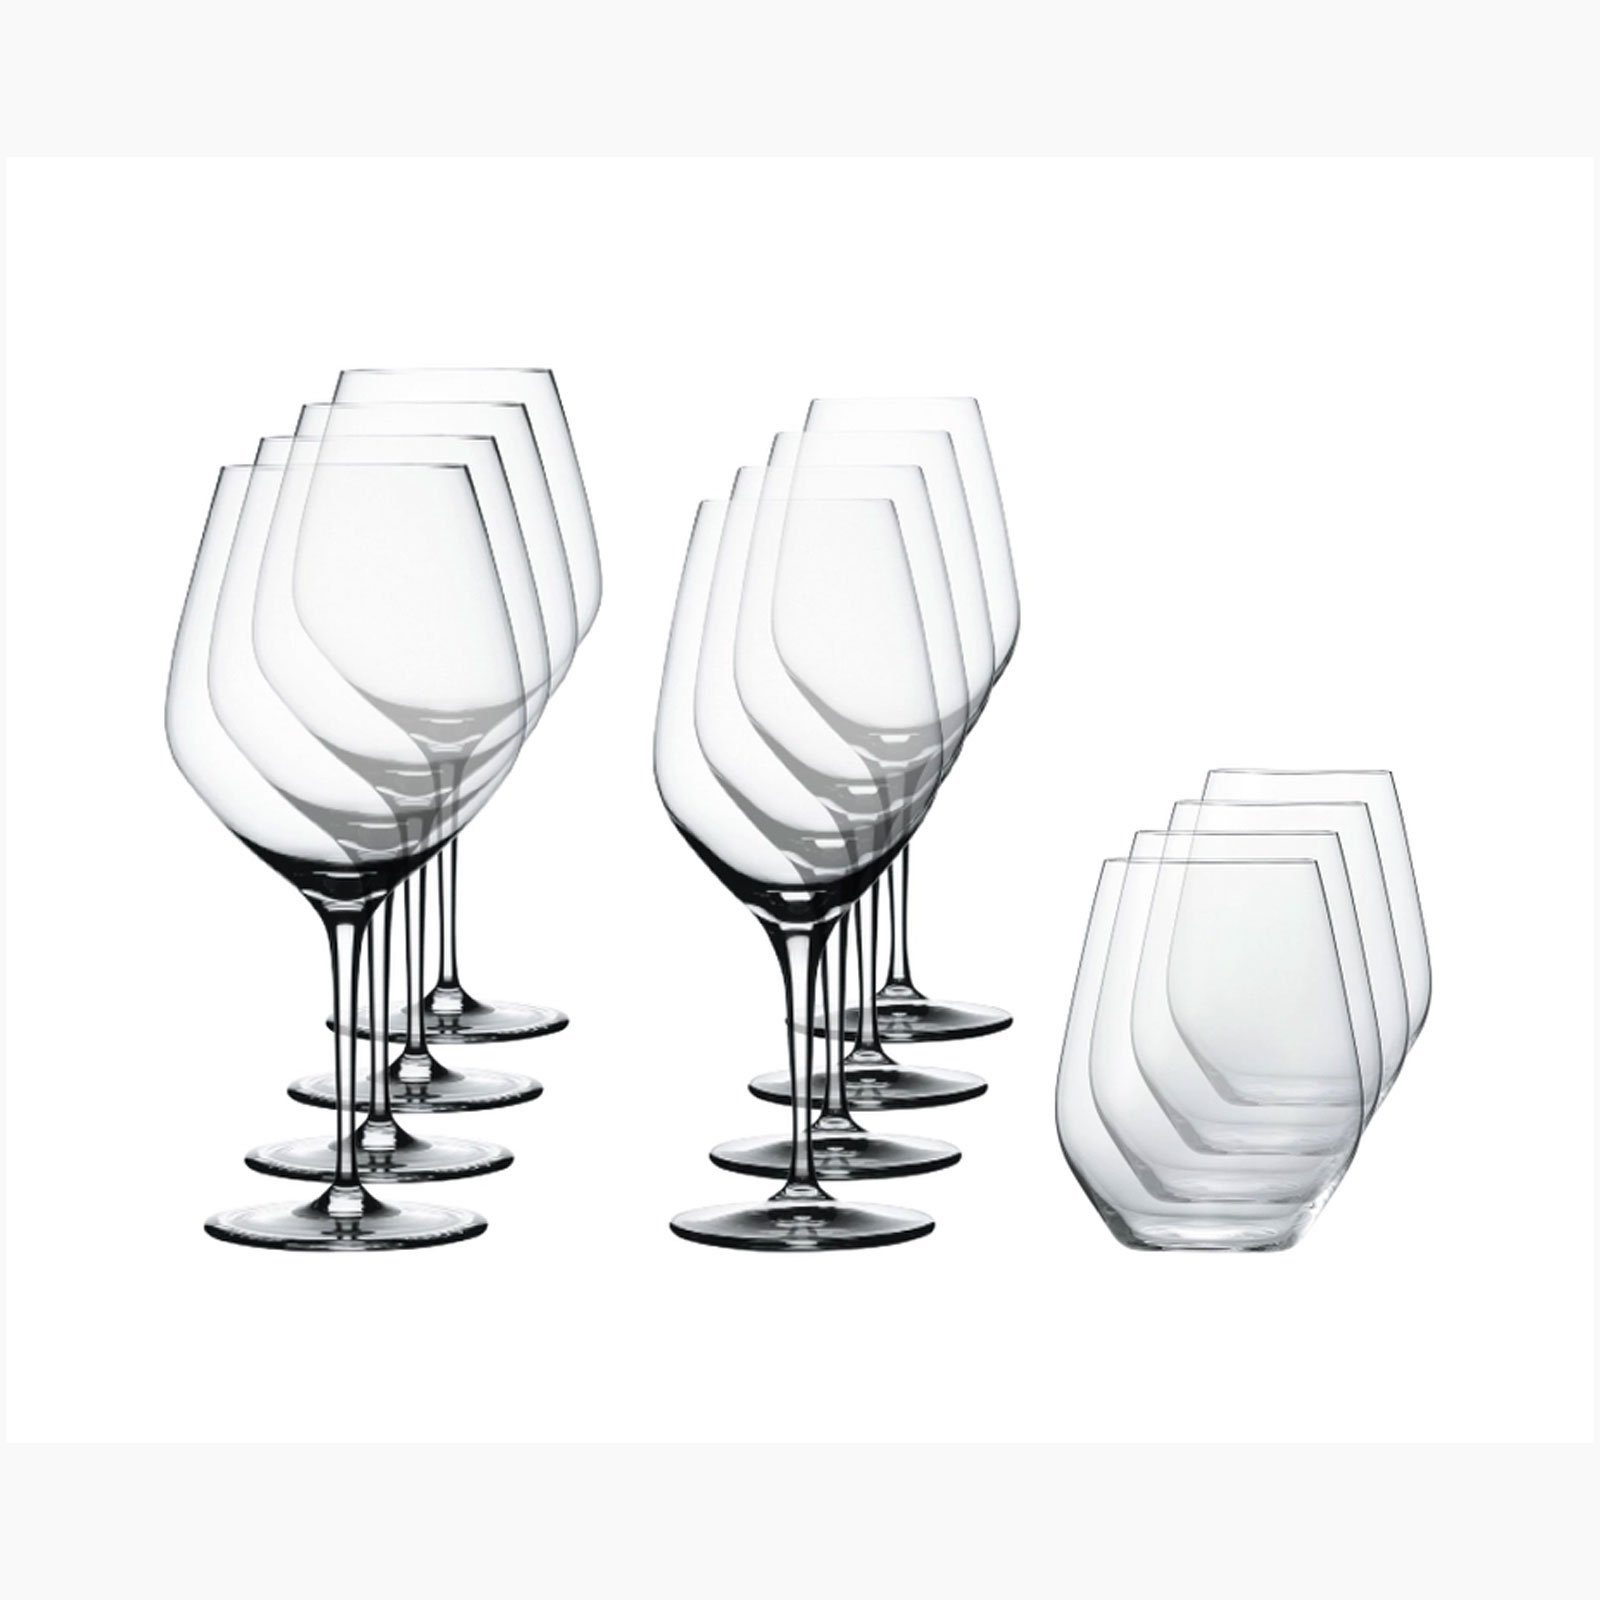 SPIEGELAU Glas AUTHENTIS, maschinell gefertigt, Kristallglas, spülmaschinenfest